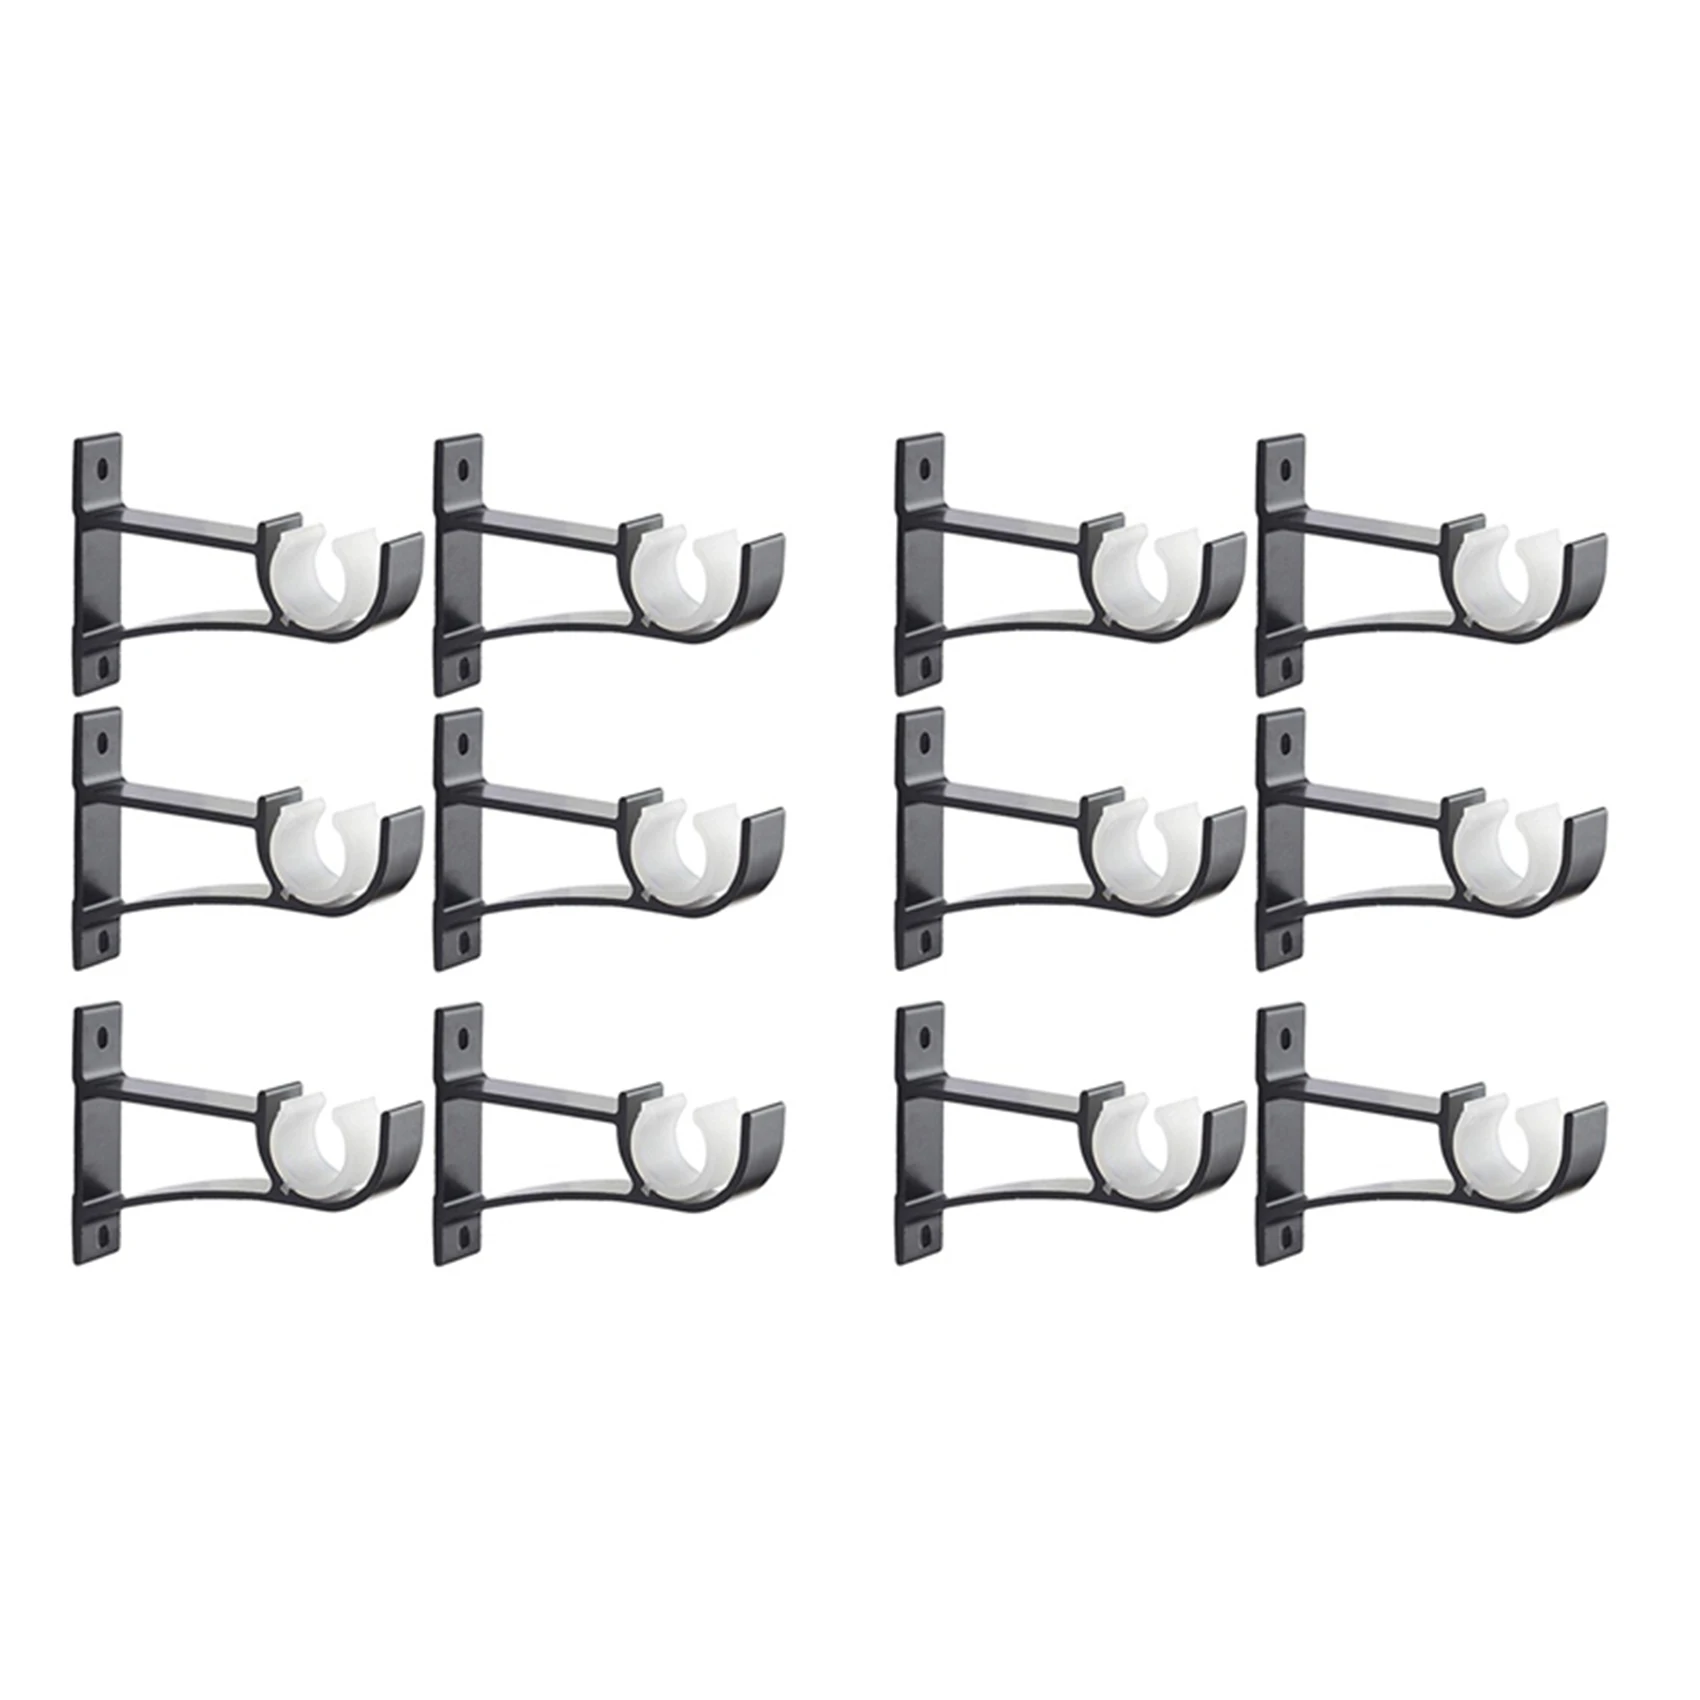 

Single Curtain Rod Brackets For Drapery Rod Aluminum Alloy Heavy Duty Curtain Rod Holders (Black) 12Pcs